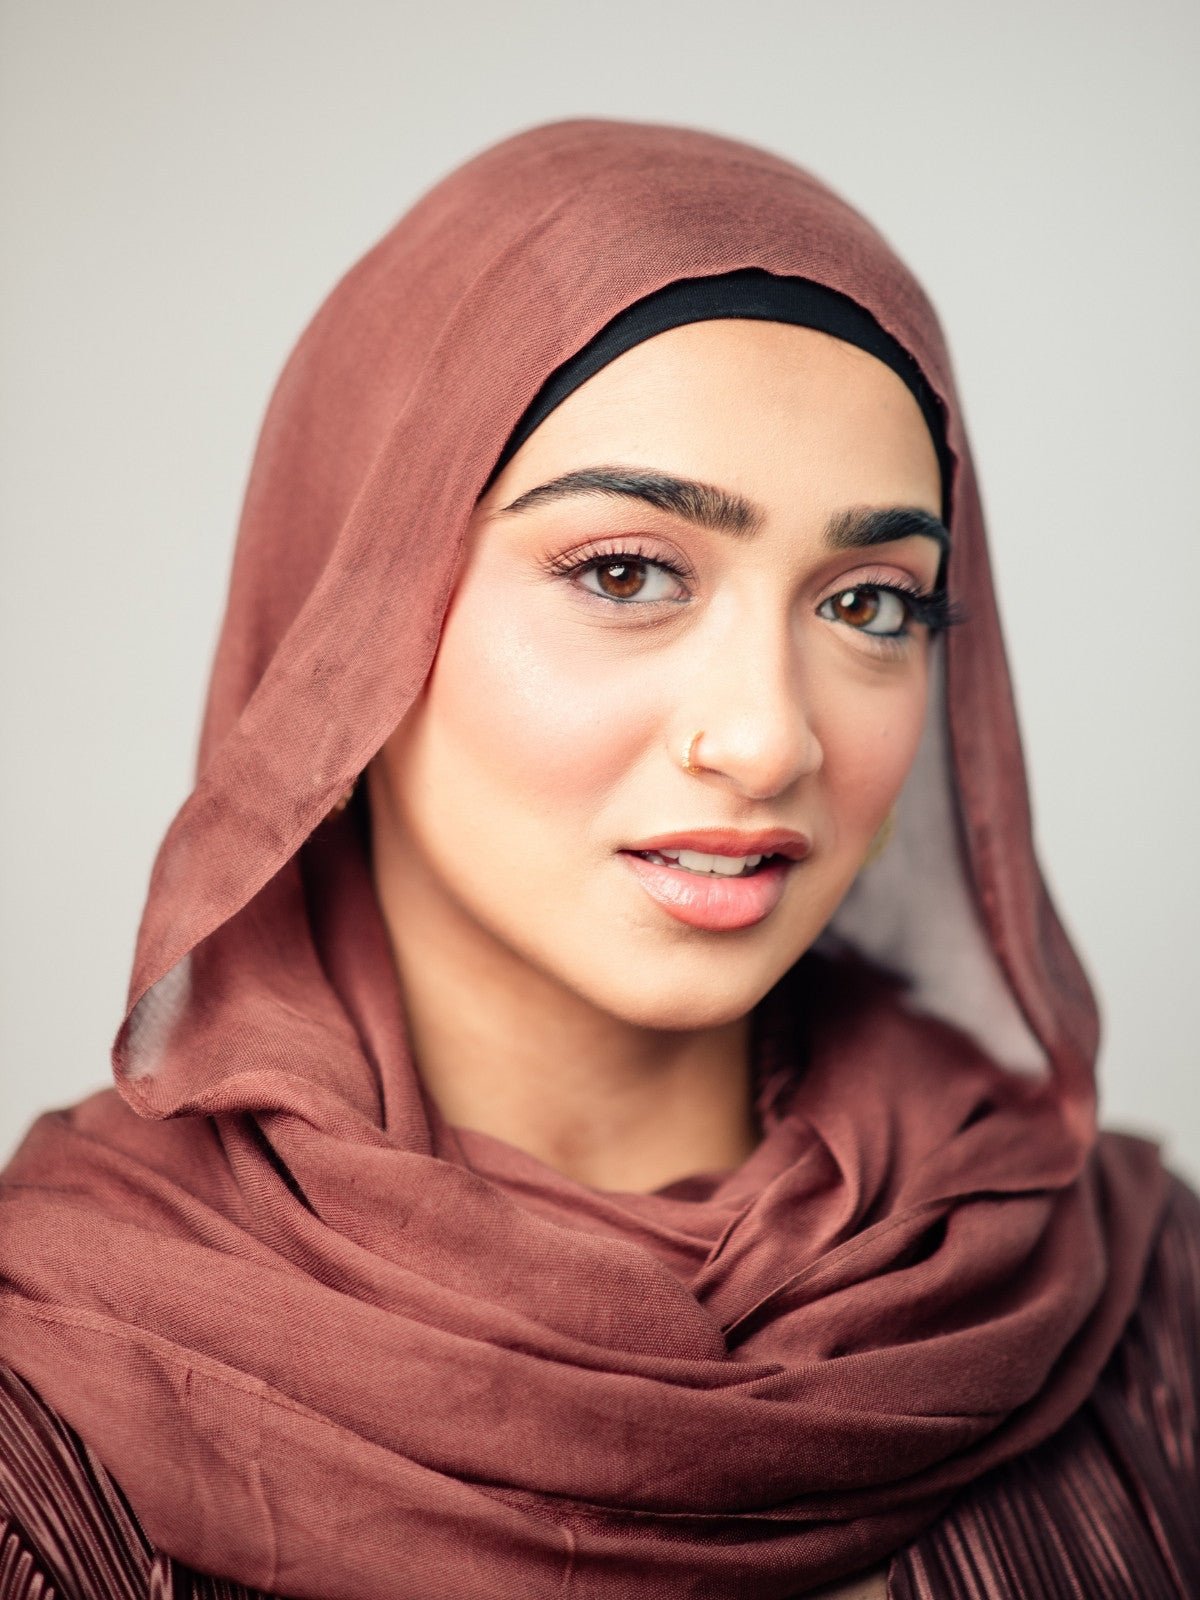 Bamboo Modal Hijab - Bronzite - LuxHijabs